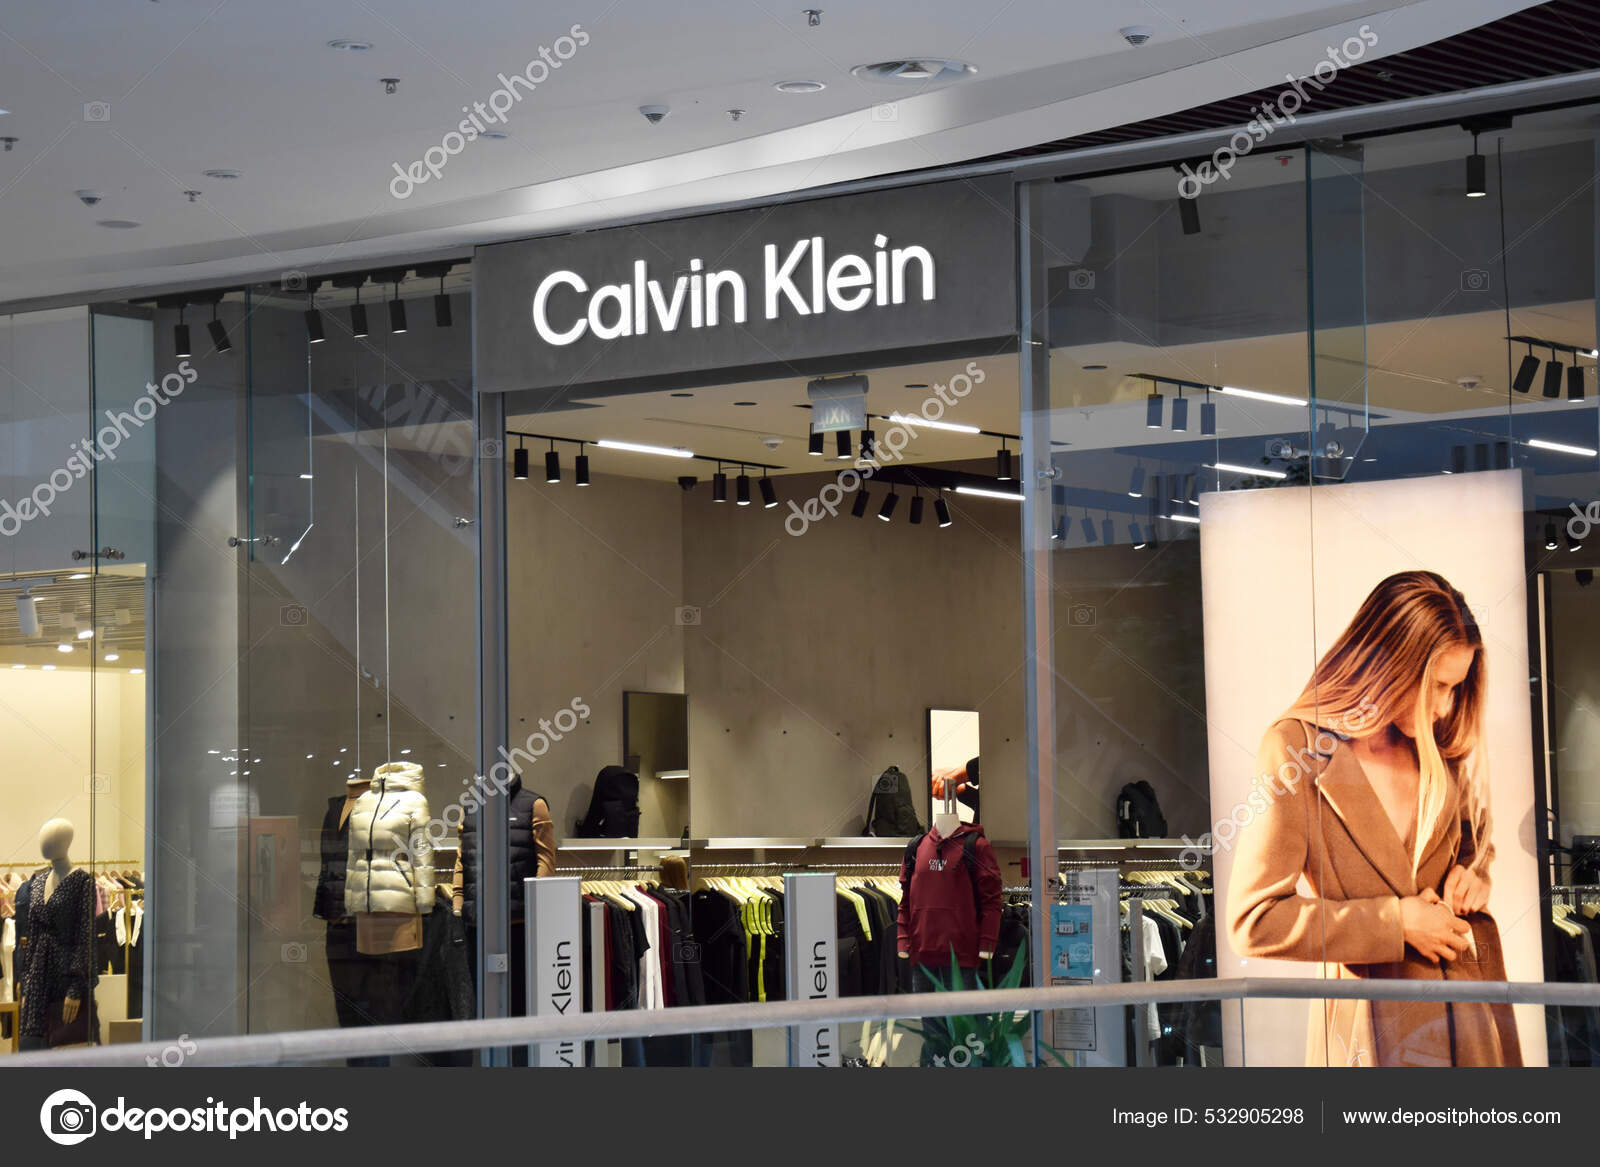 Calvin klein shop Stock Photos, Royalty Free Calvin klein shop Images |  Depositphotos